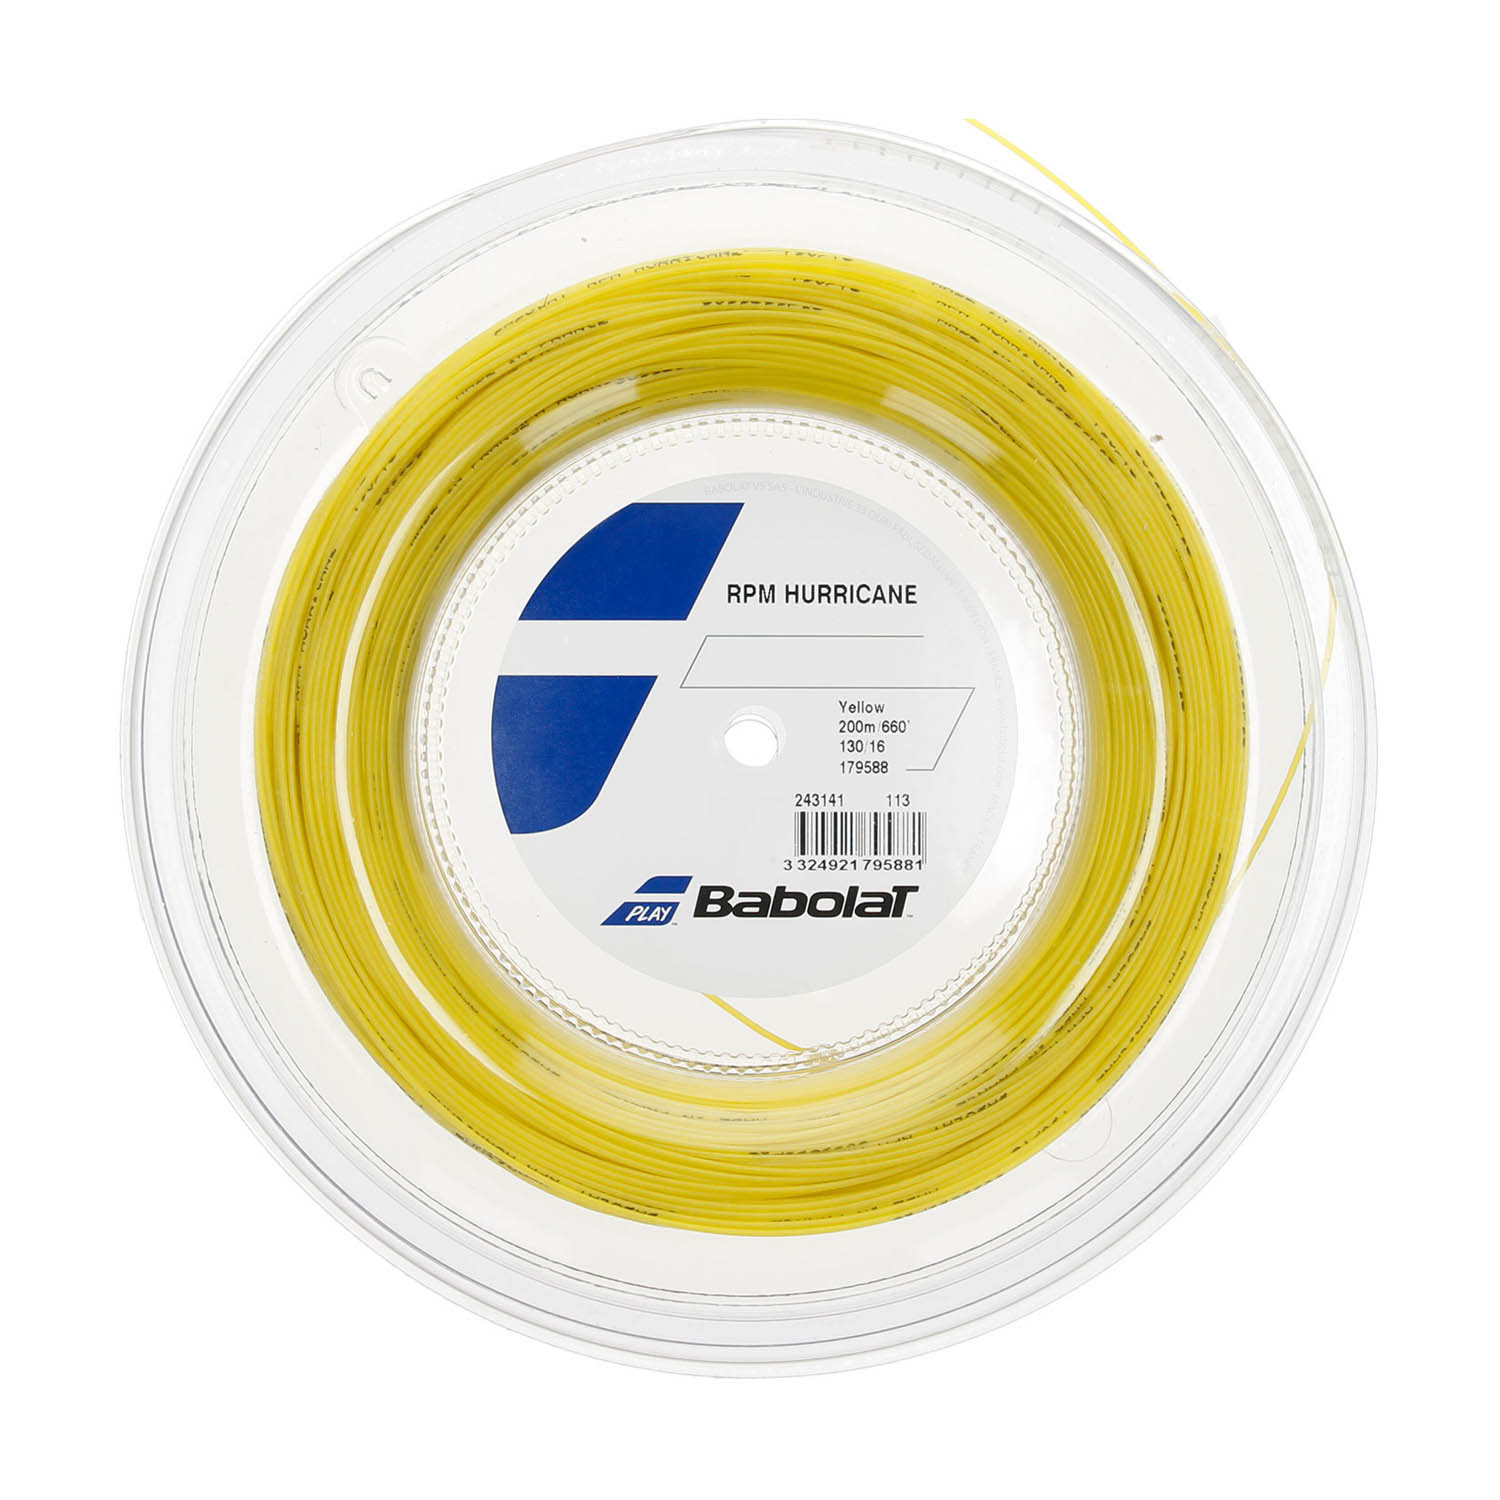 Babolat RPM Hurricane 1.30 Matassa 200 m - Yellow